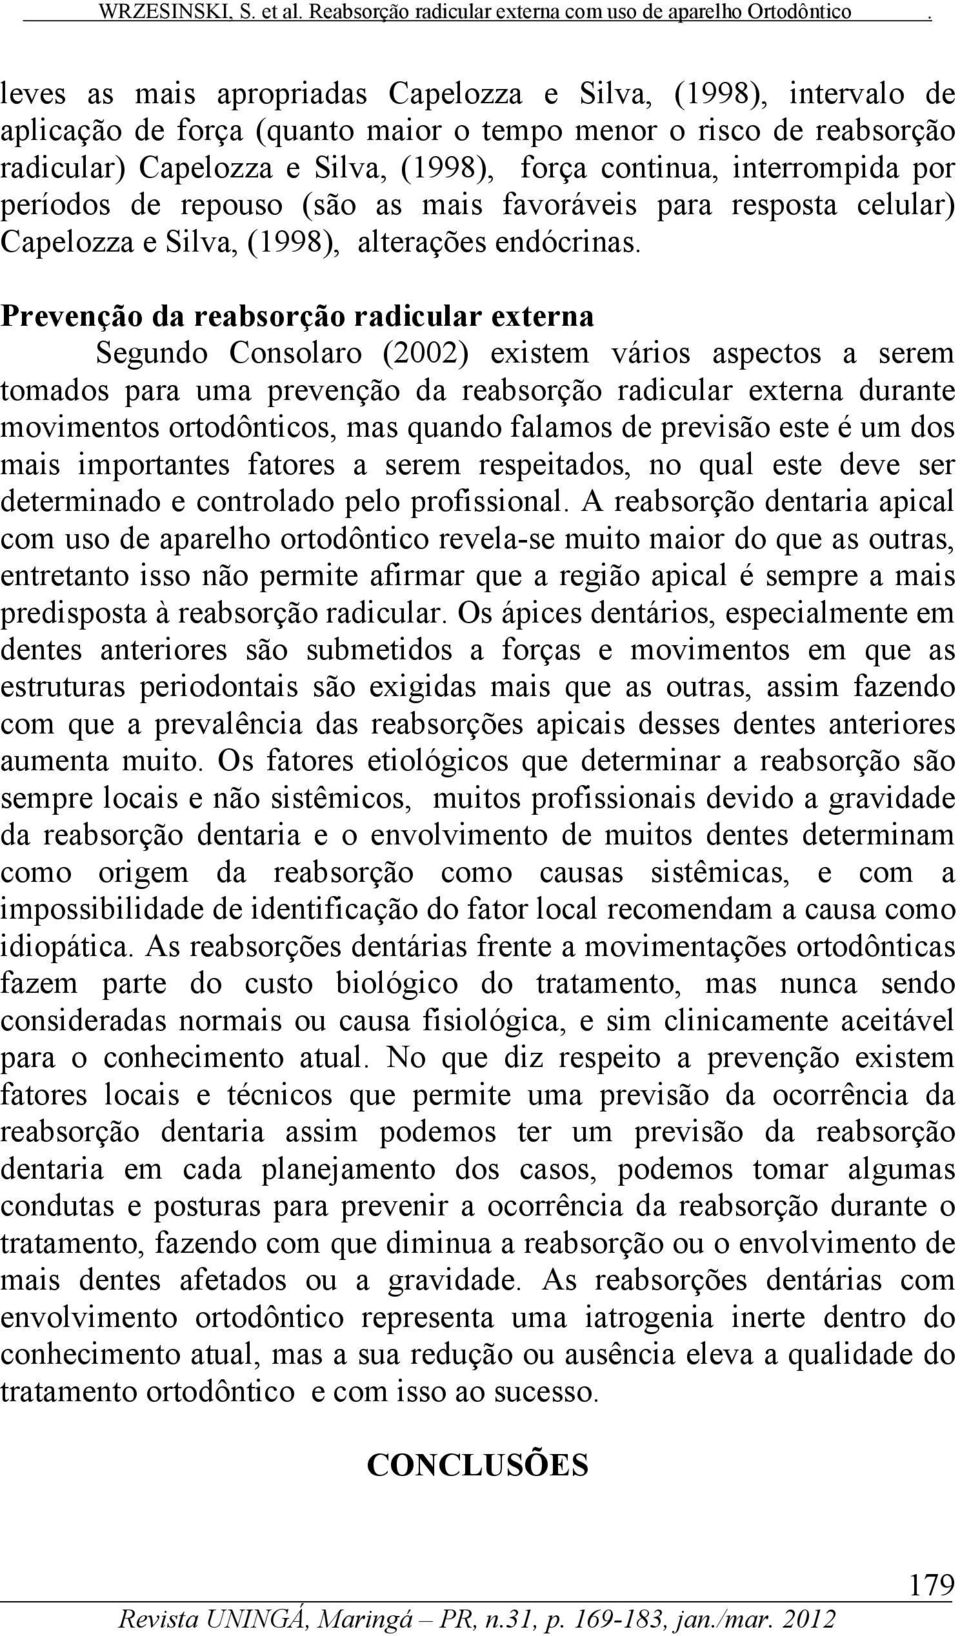 Prevenção da reabsorção radicular externa Segundo Consolaro (2002) existem vários aspectos a serem tomados para uma prevenção da reabsorção radicular externa durante movimentos ortodônticos, mas